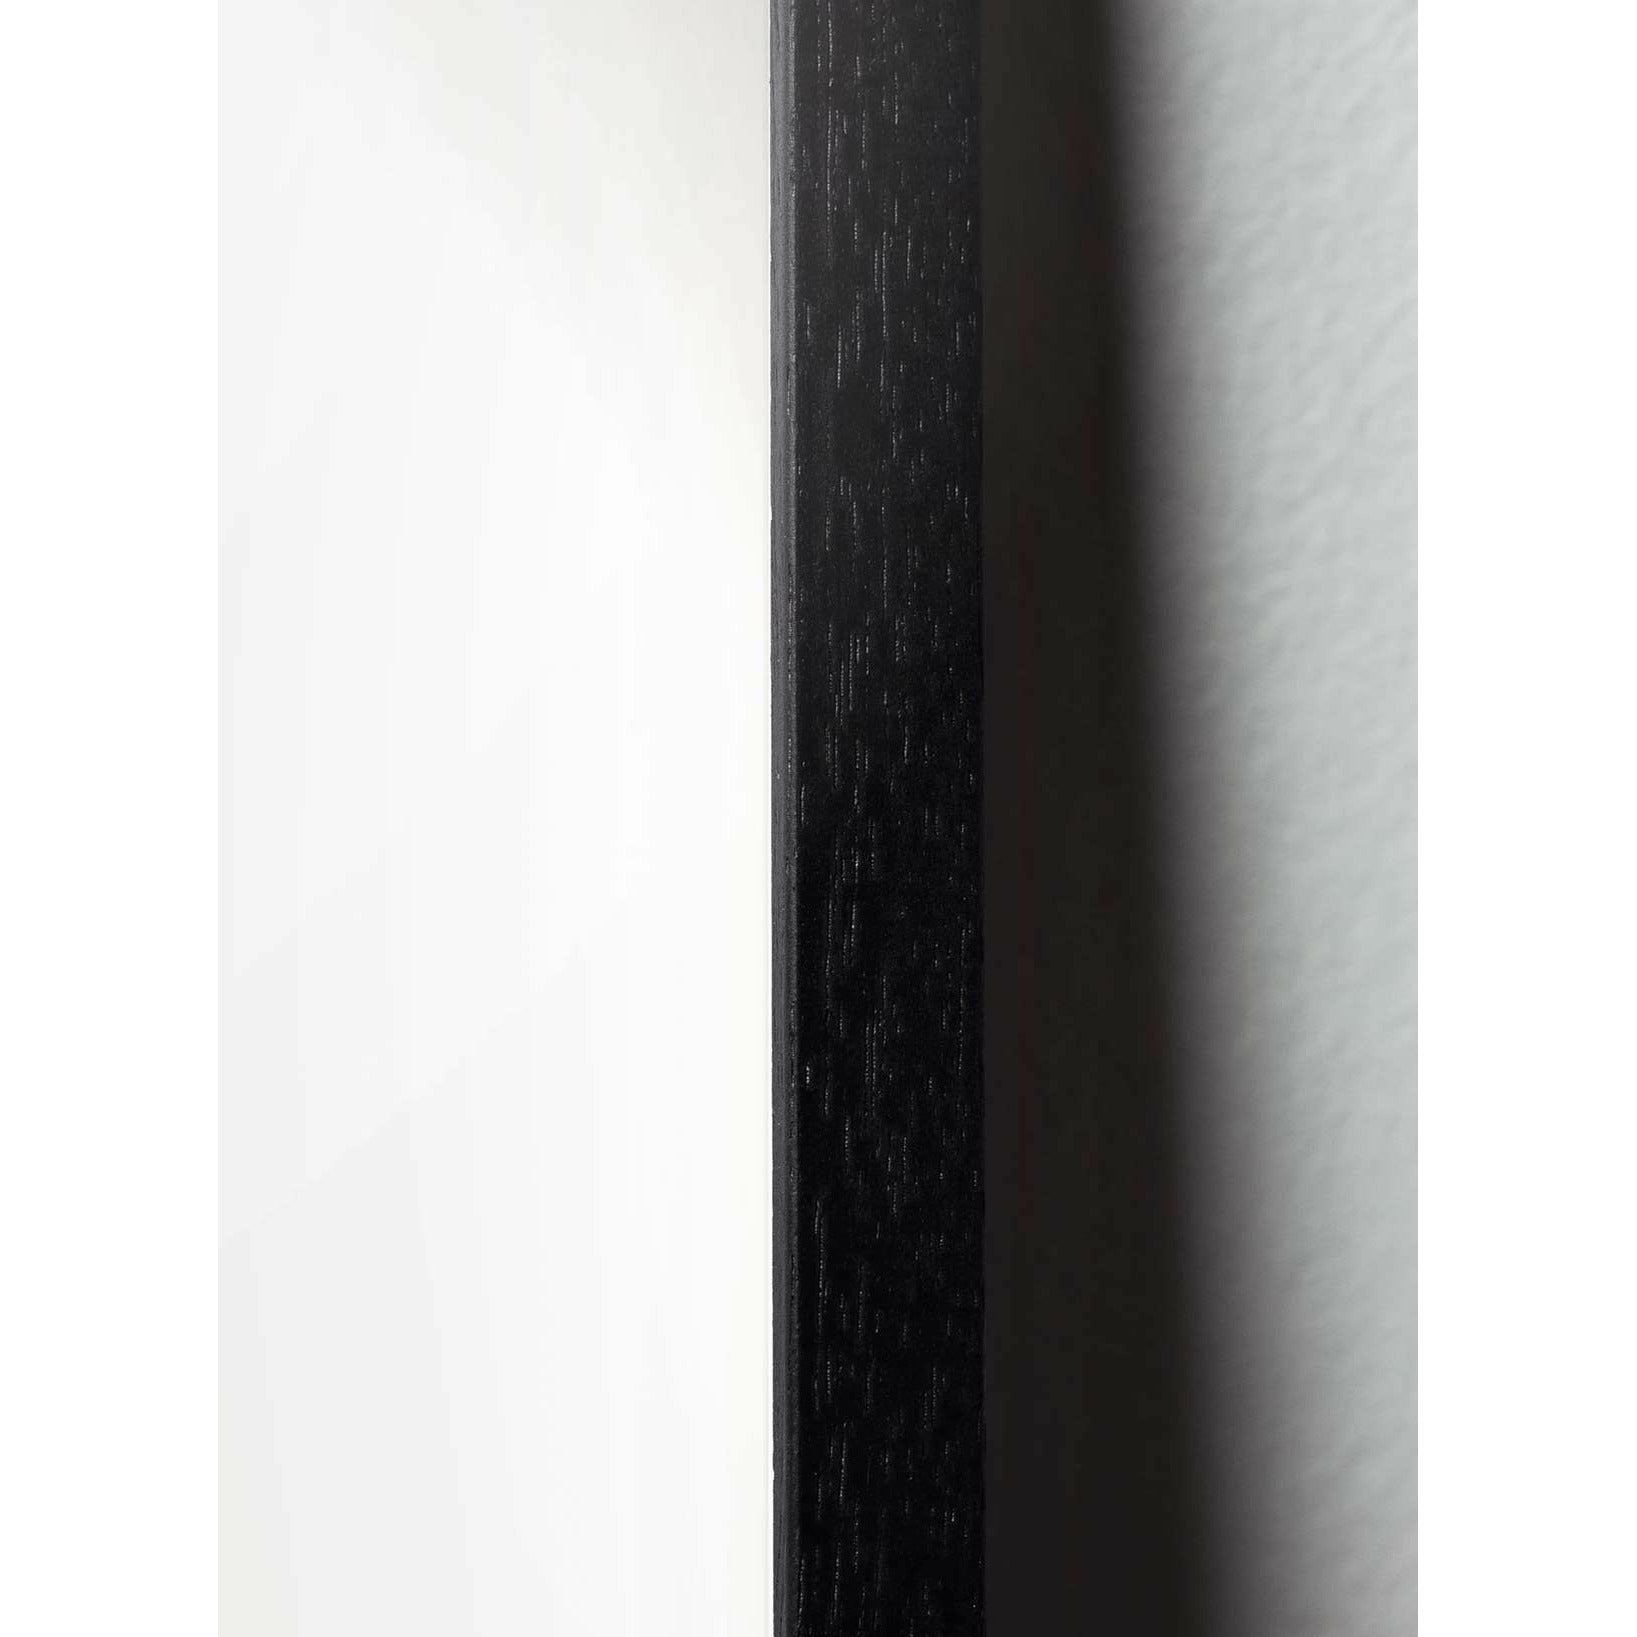 Brainchild Ægpapir klip plakat, ramme i sort lakeret træ 30x40 cm, lyserød baggrund